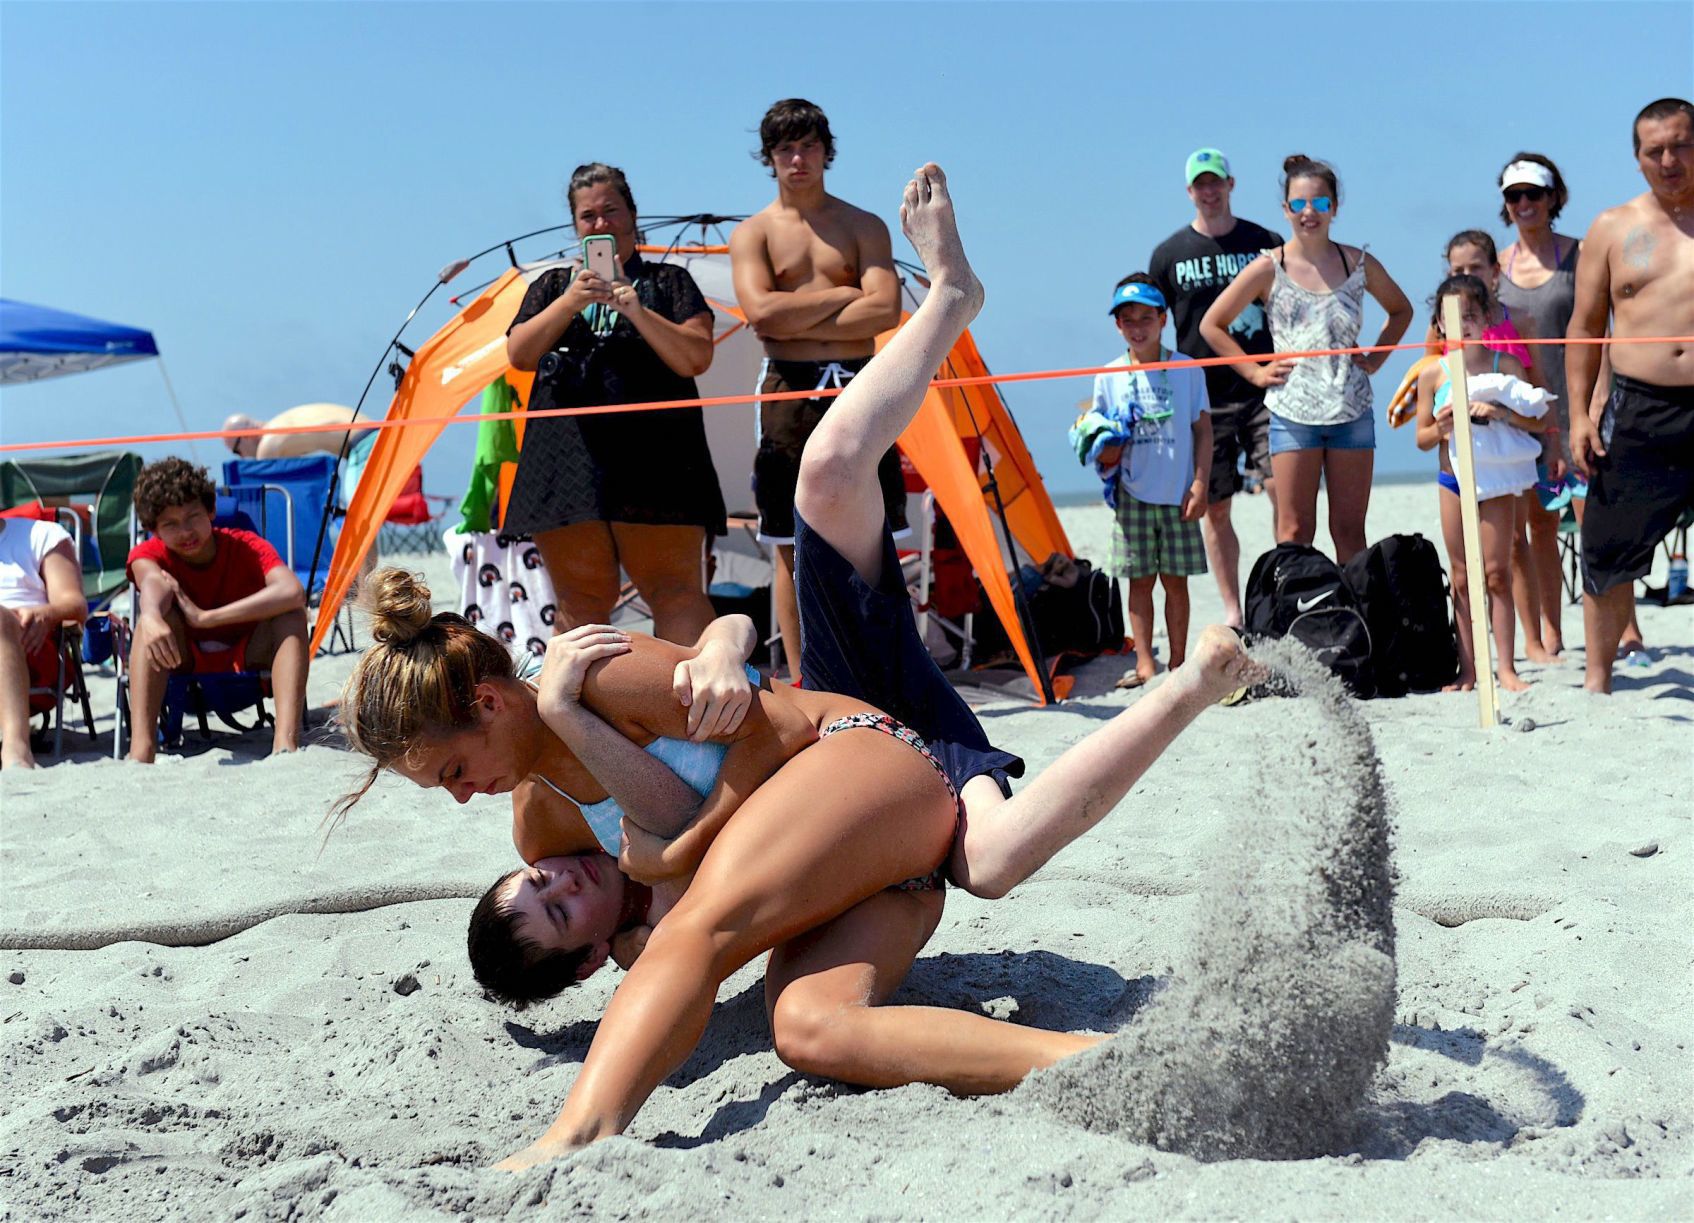 Beach wrestling set for